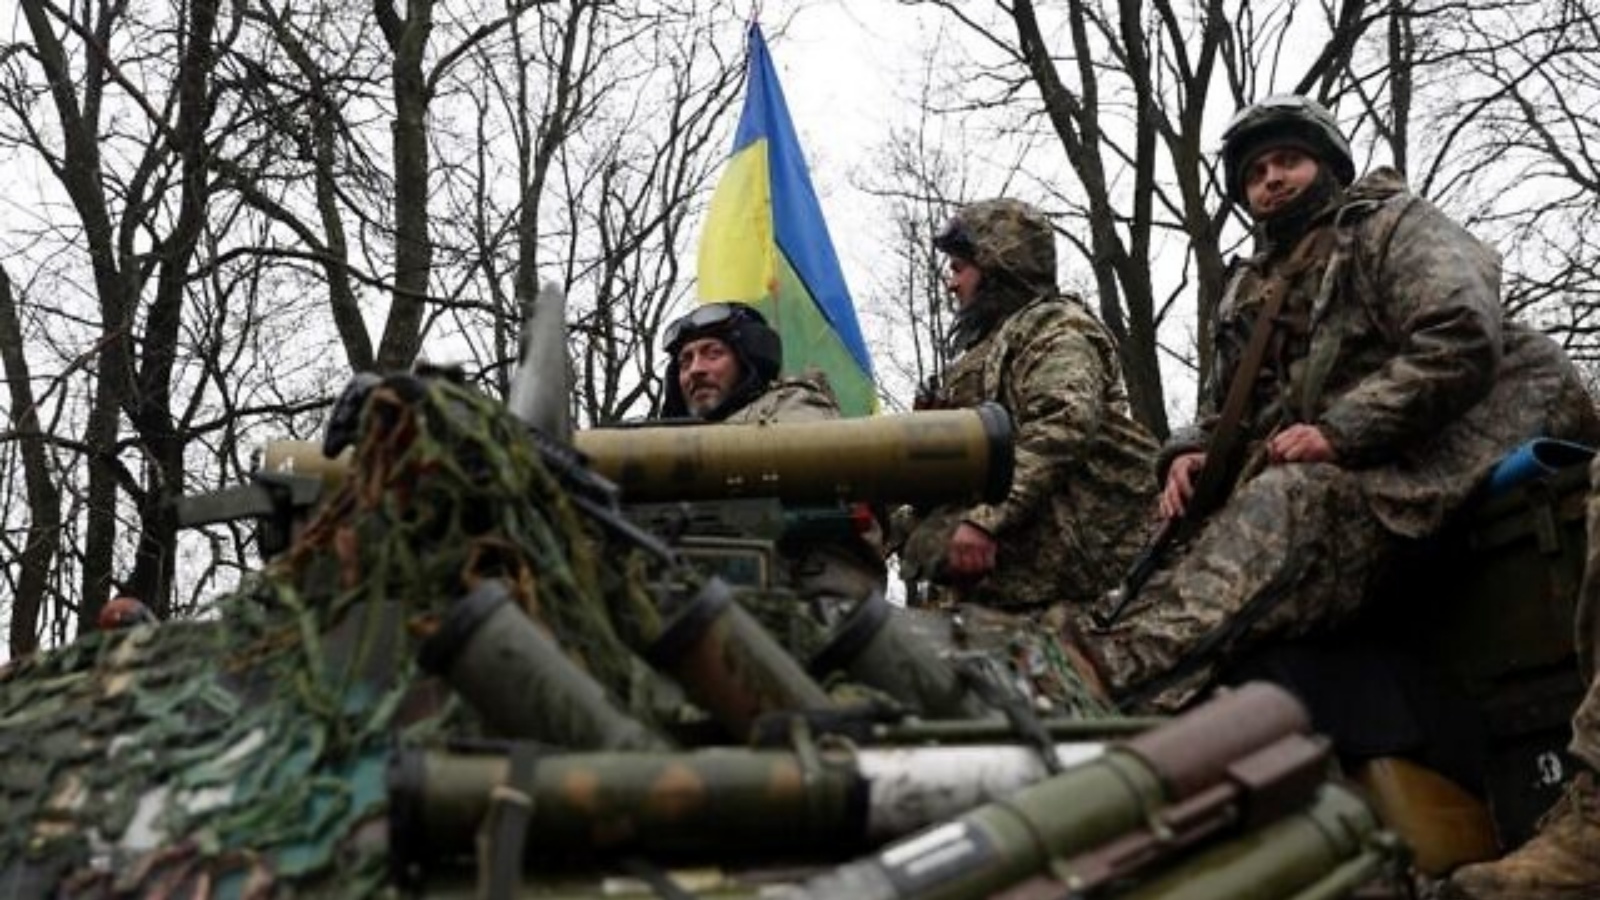 جنود أوكرانيون يقفون على ناقلة جند مدرعة (APC)، ليس بعيدًا عن خط المواجهة مع القوات الروسية، في 18 أبريل 2022، أثناء الغزو الروسي لأوكرانيا.